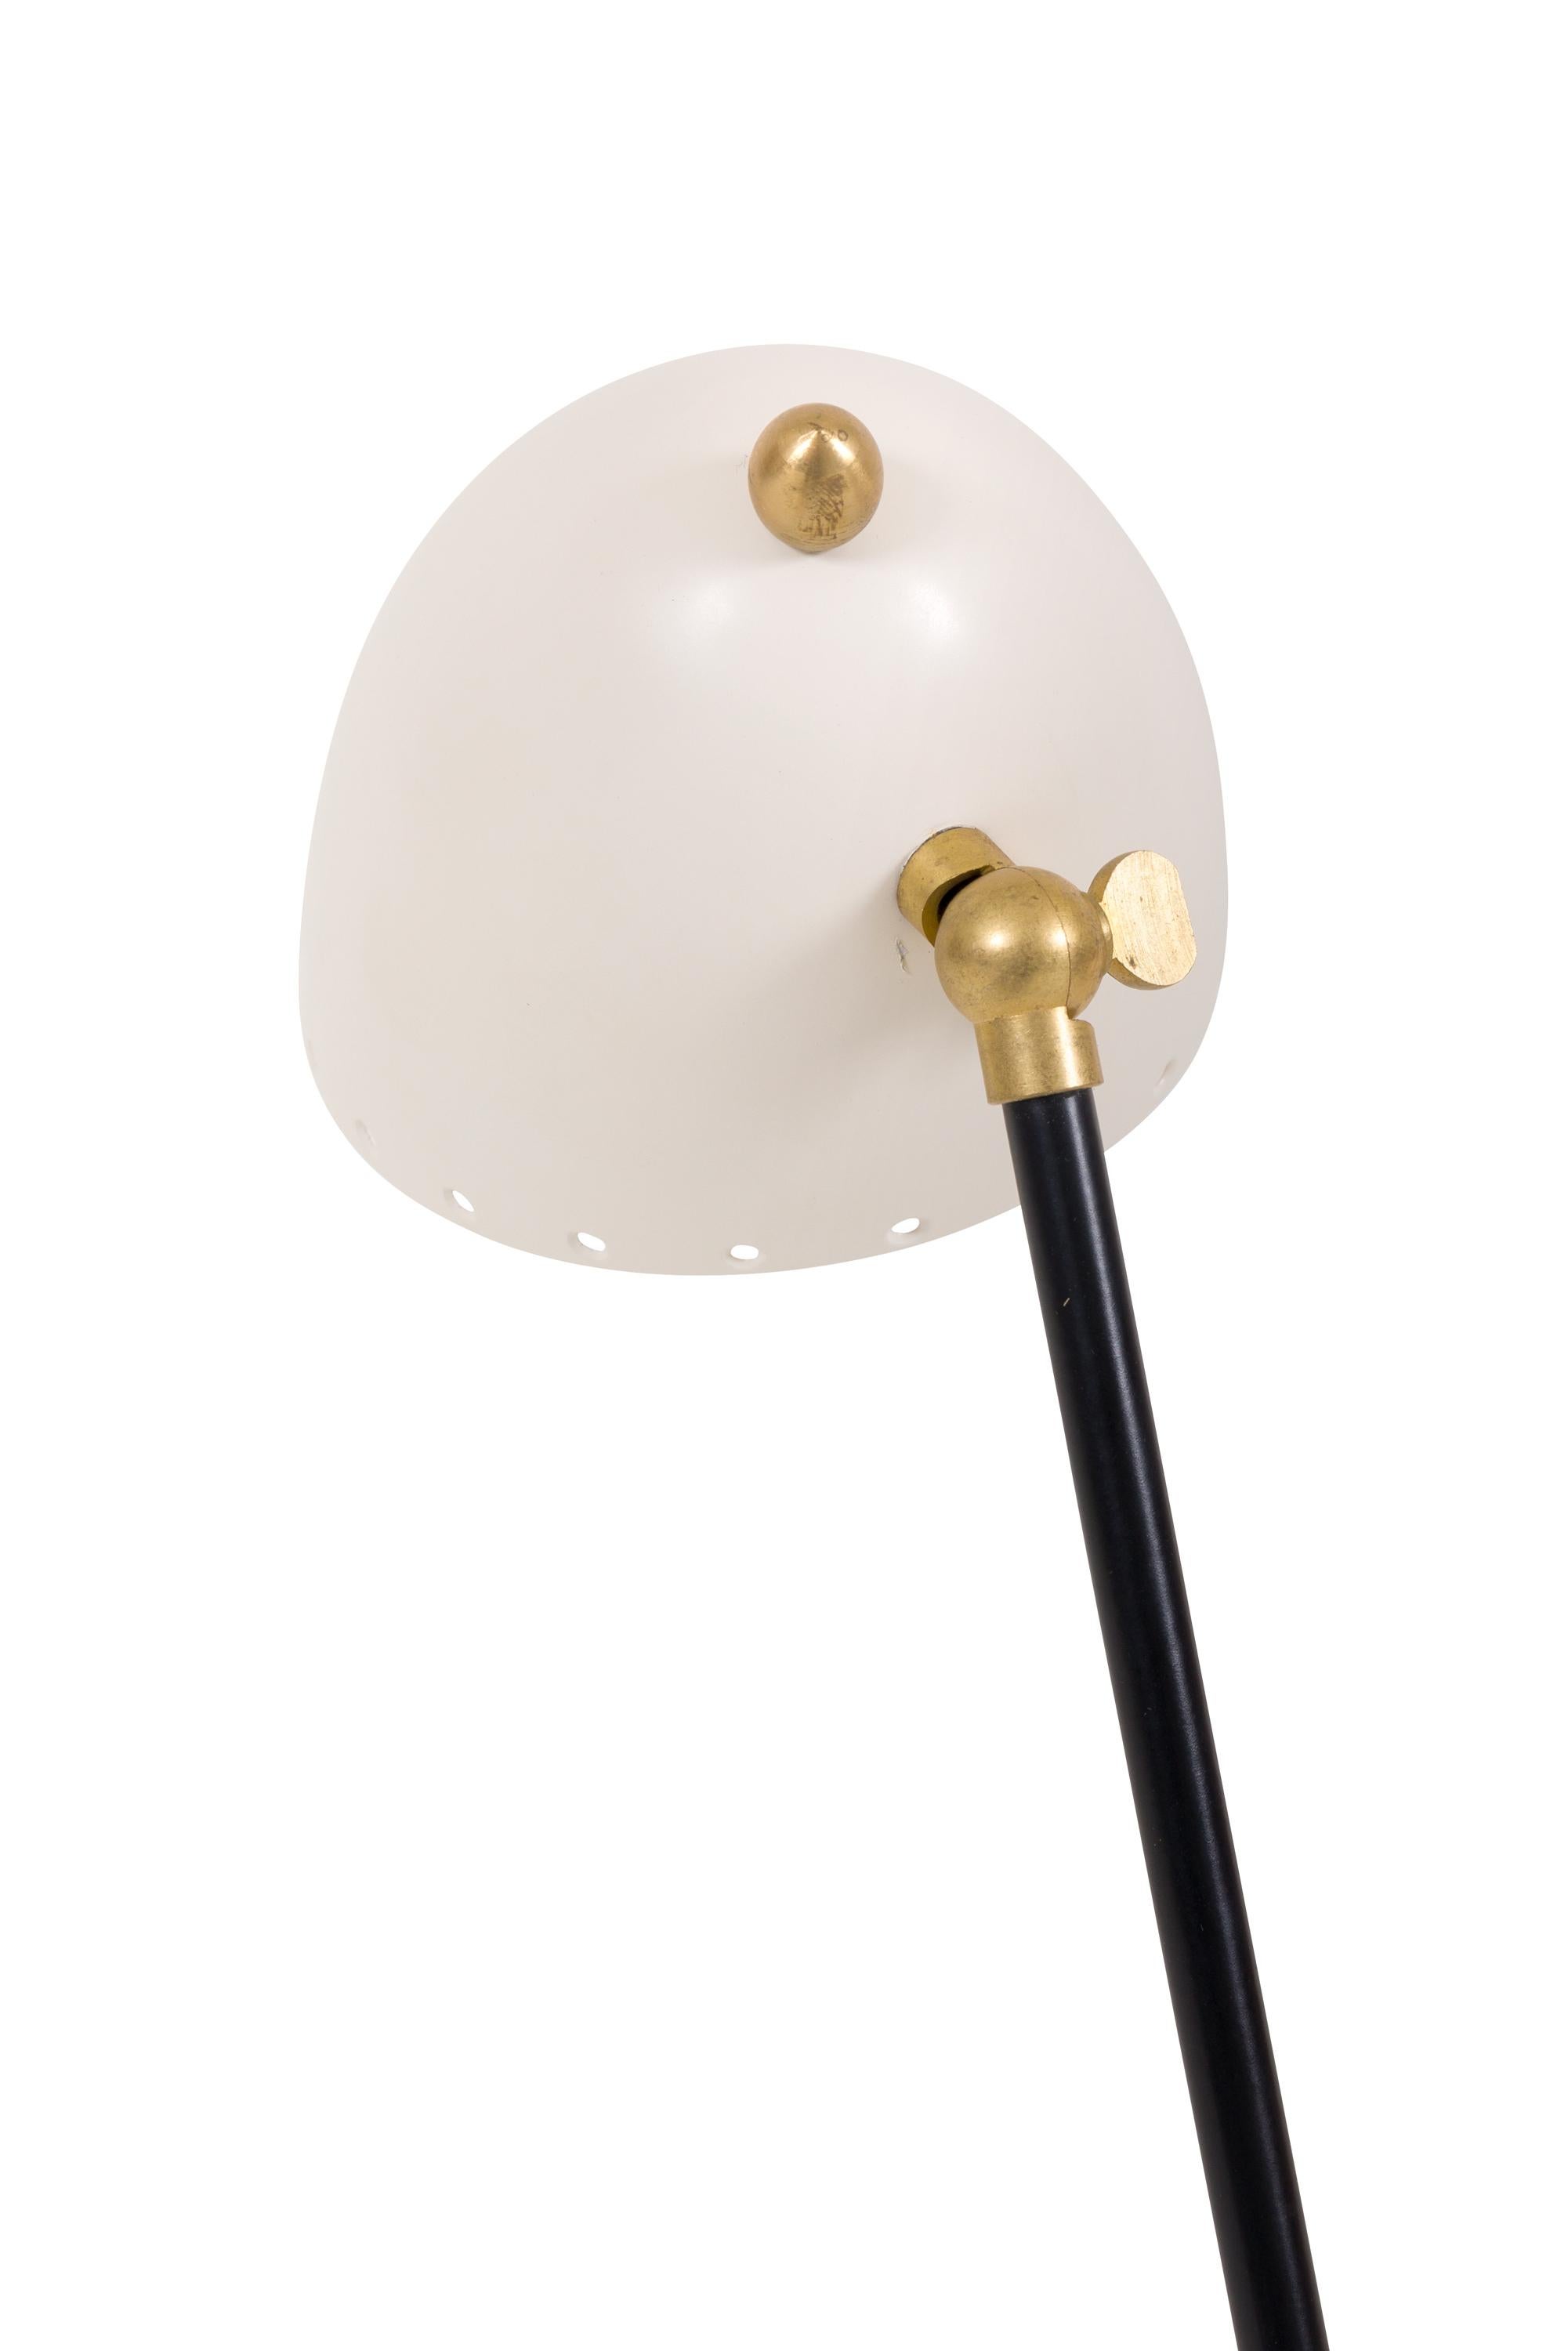 Mid-Century Modern Midcentury Style Italian Desk Lamp or Wall Light